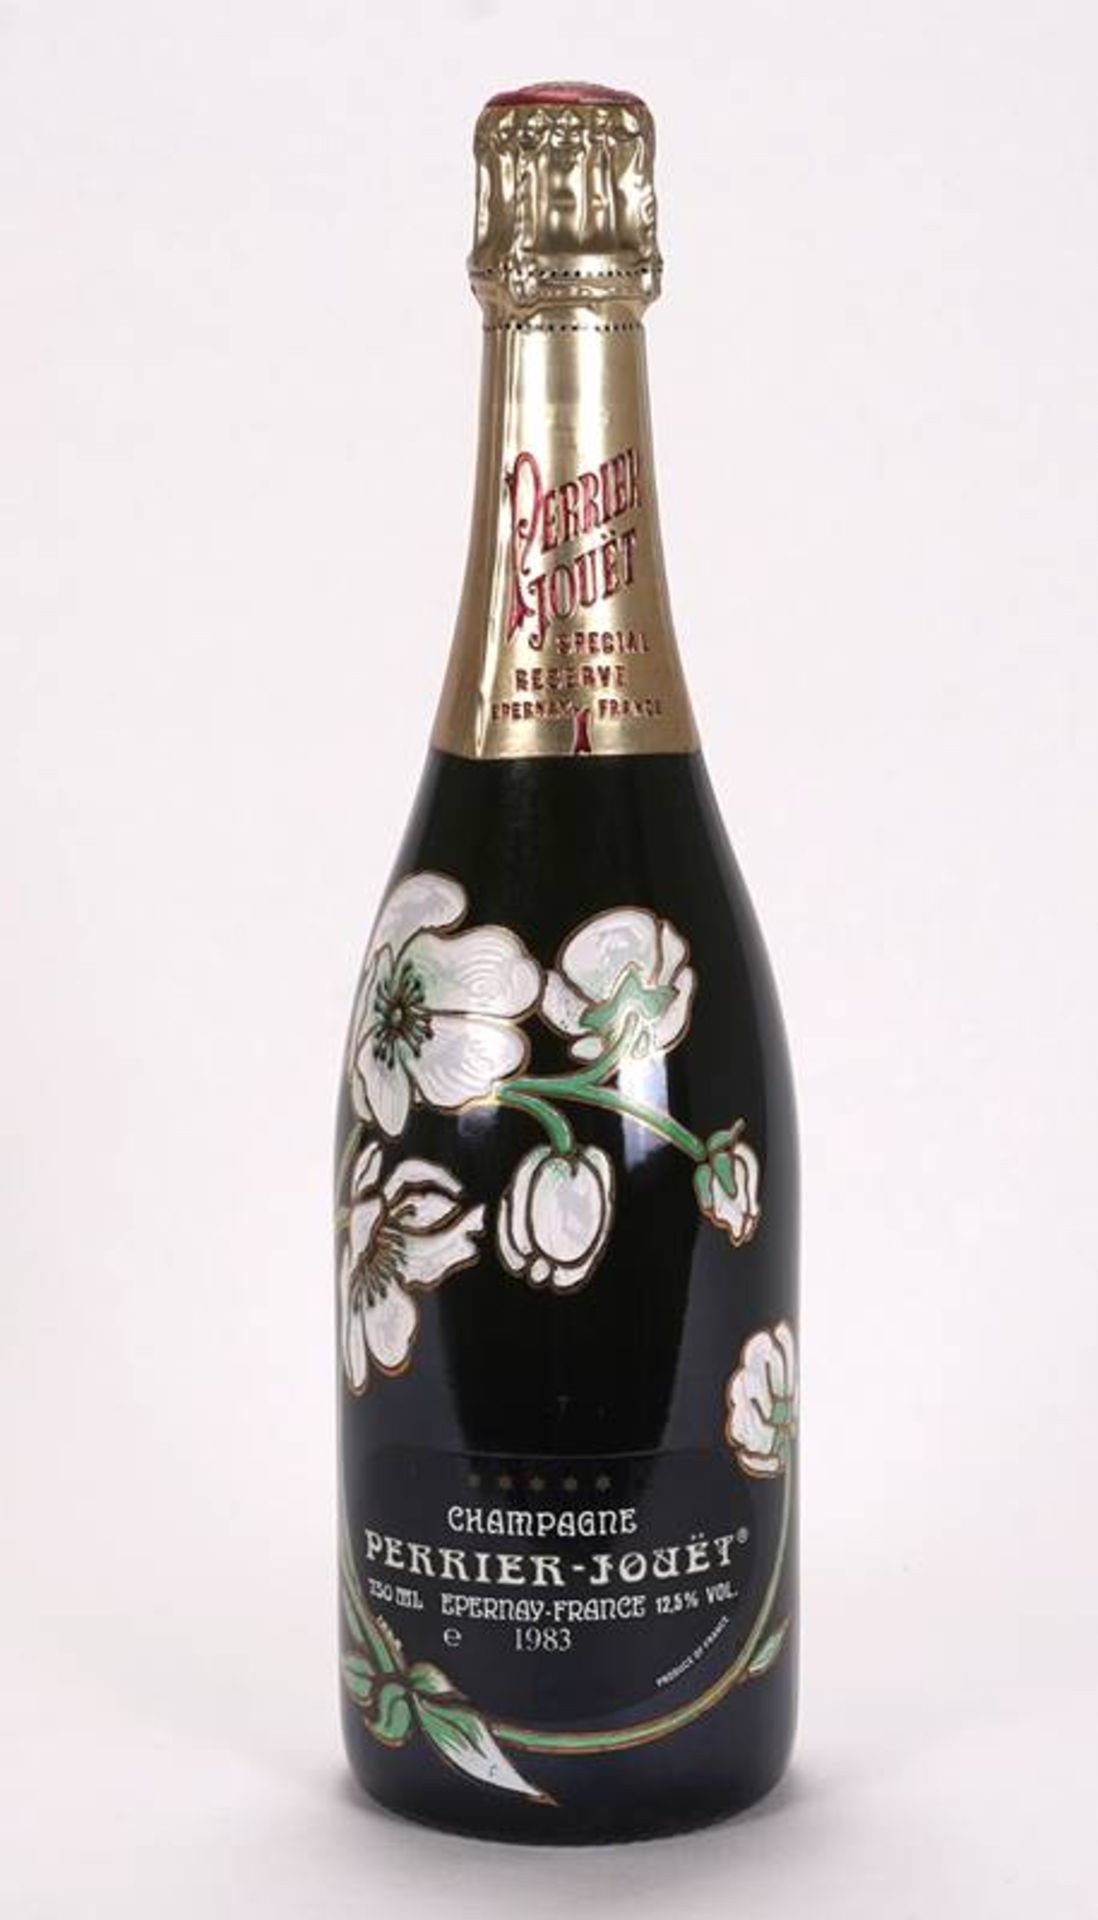 1 bottle Perrier-Jouet Champagne